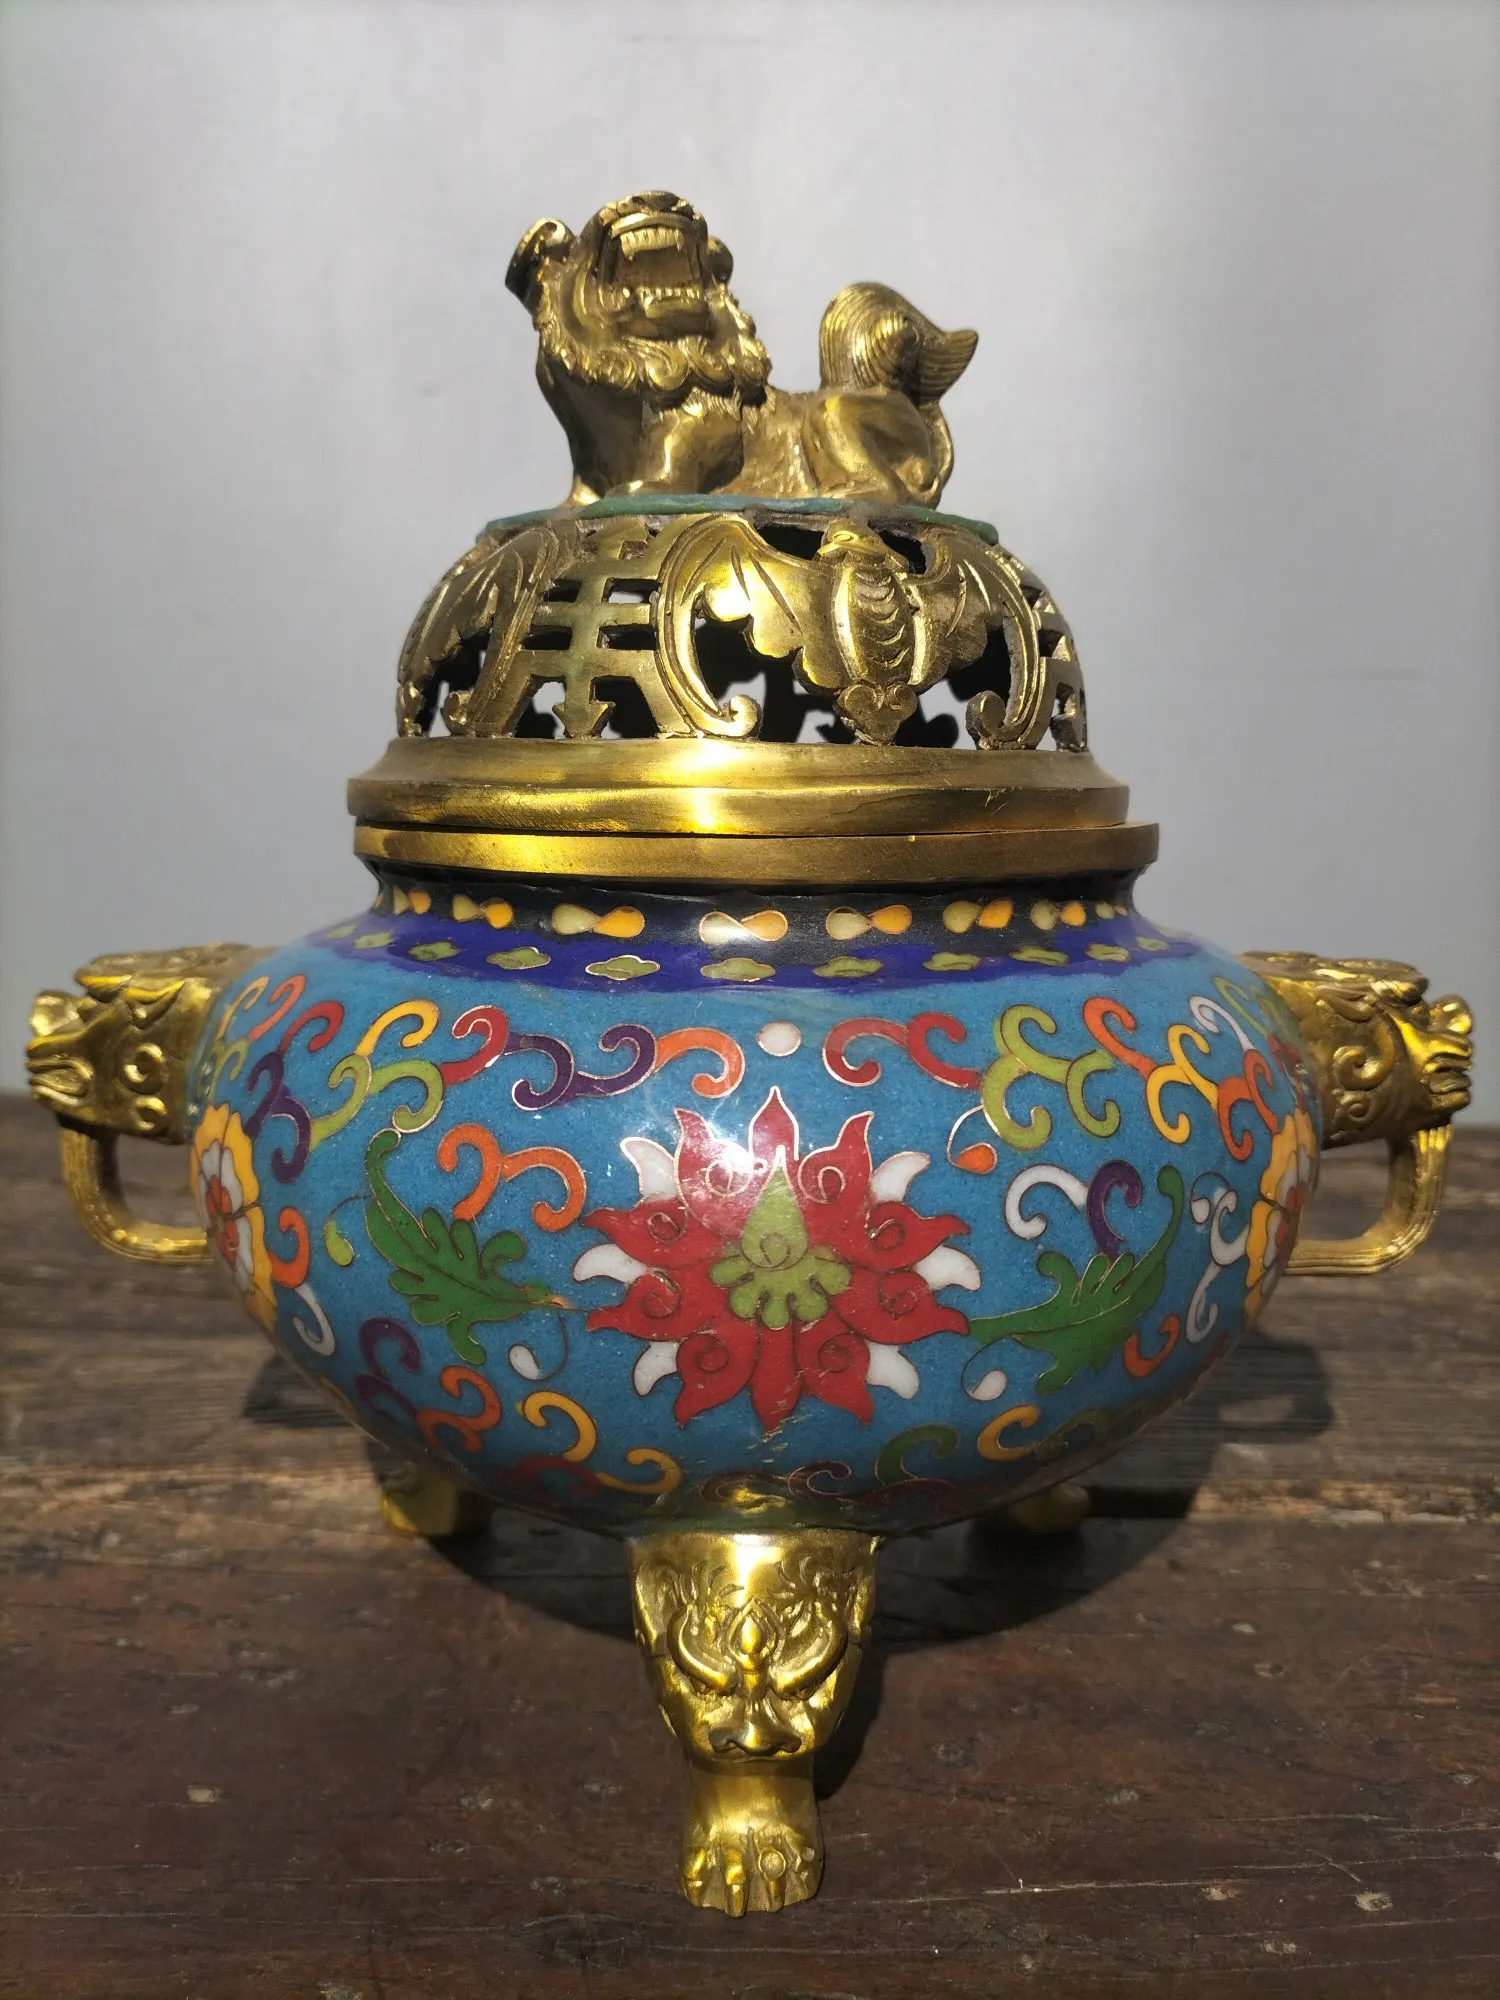 

Коллекция тибетских храмов 9 дюймов, старое фиолетовое искусственное покрытие с рисунком ушей животных, курильница с тремя ногами, городской домик